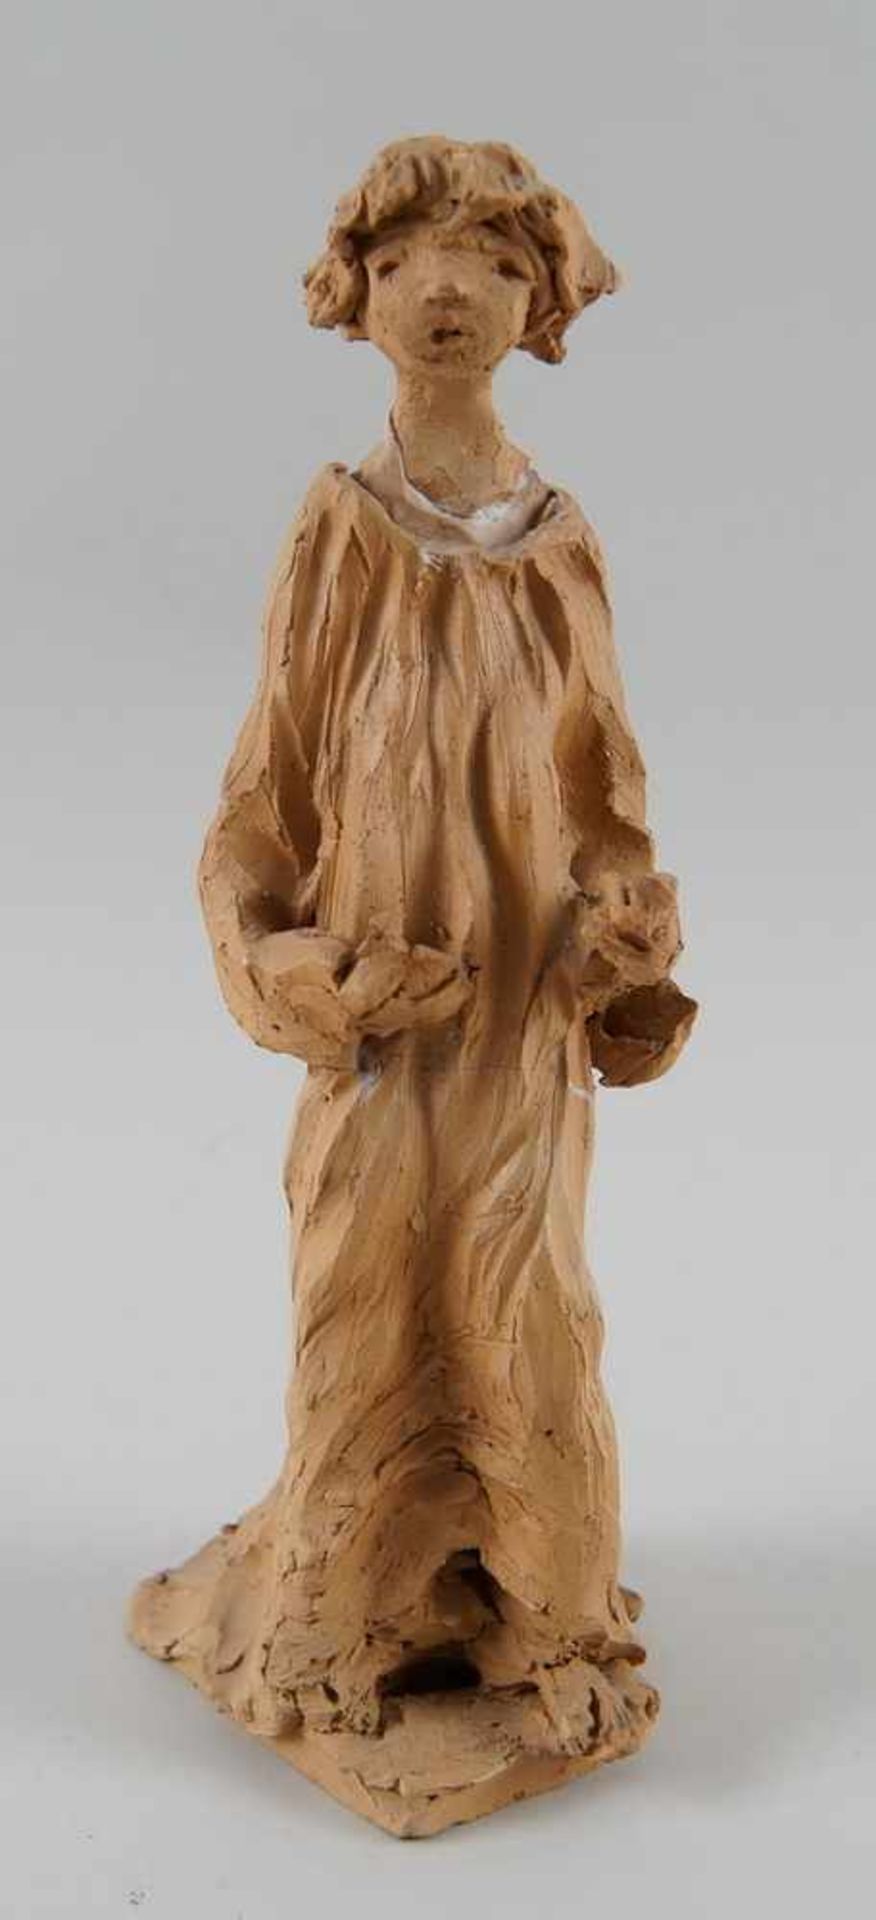 Francesco Messino Skulptur aus Ton, besch., H 25 cm- - -24.00 % buyer's premium on the hammer - Bild 6 aus 7